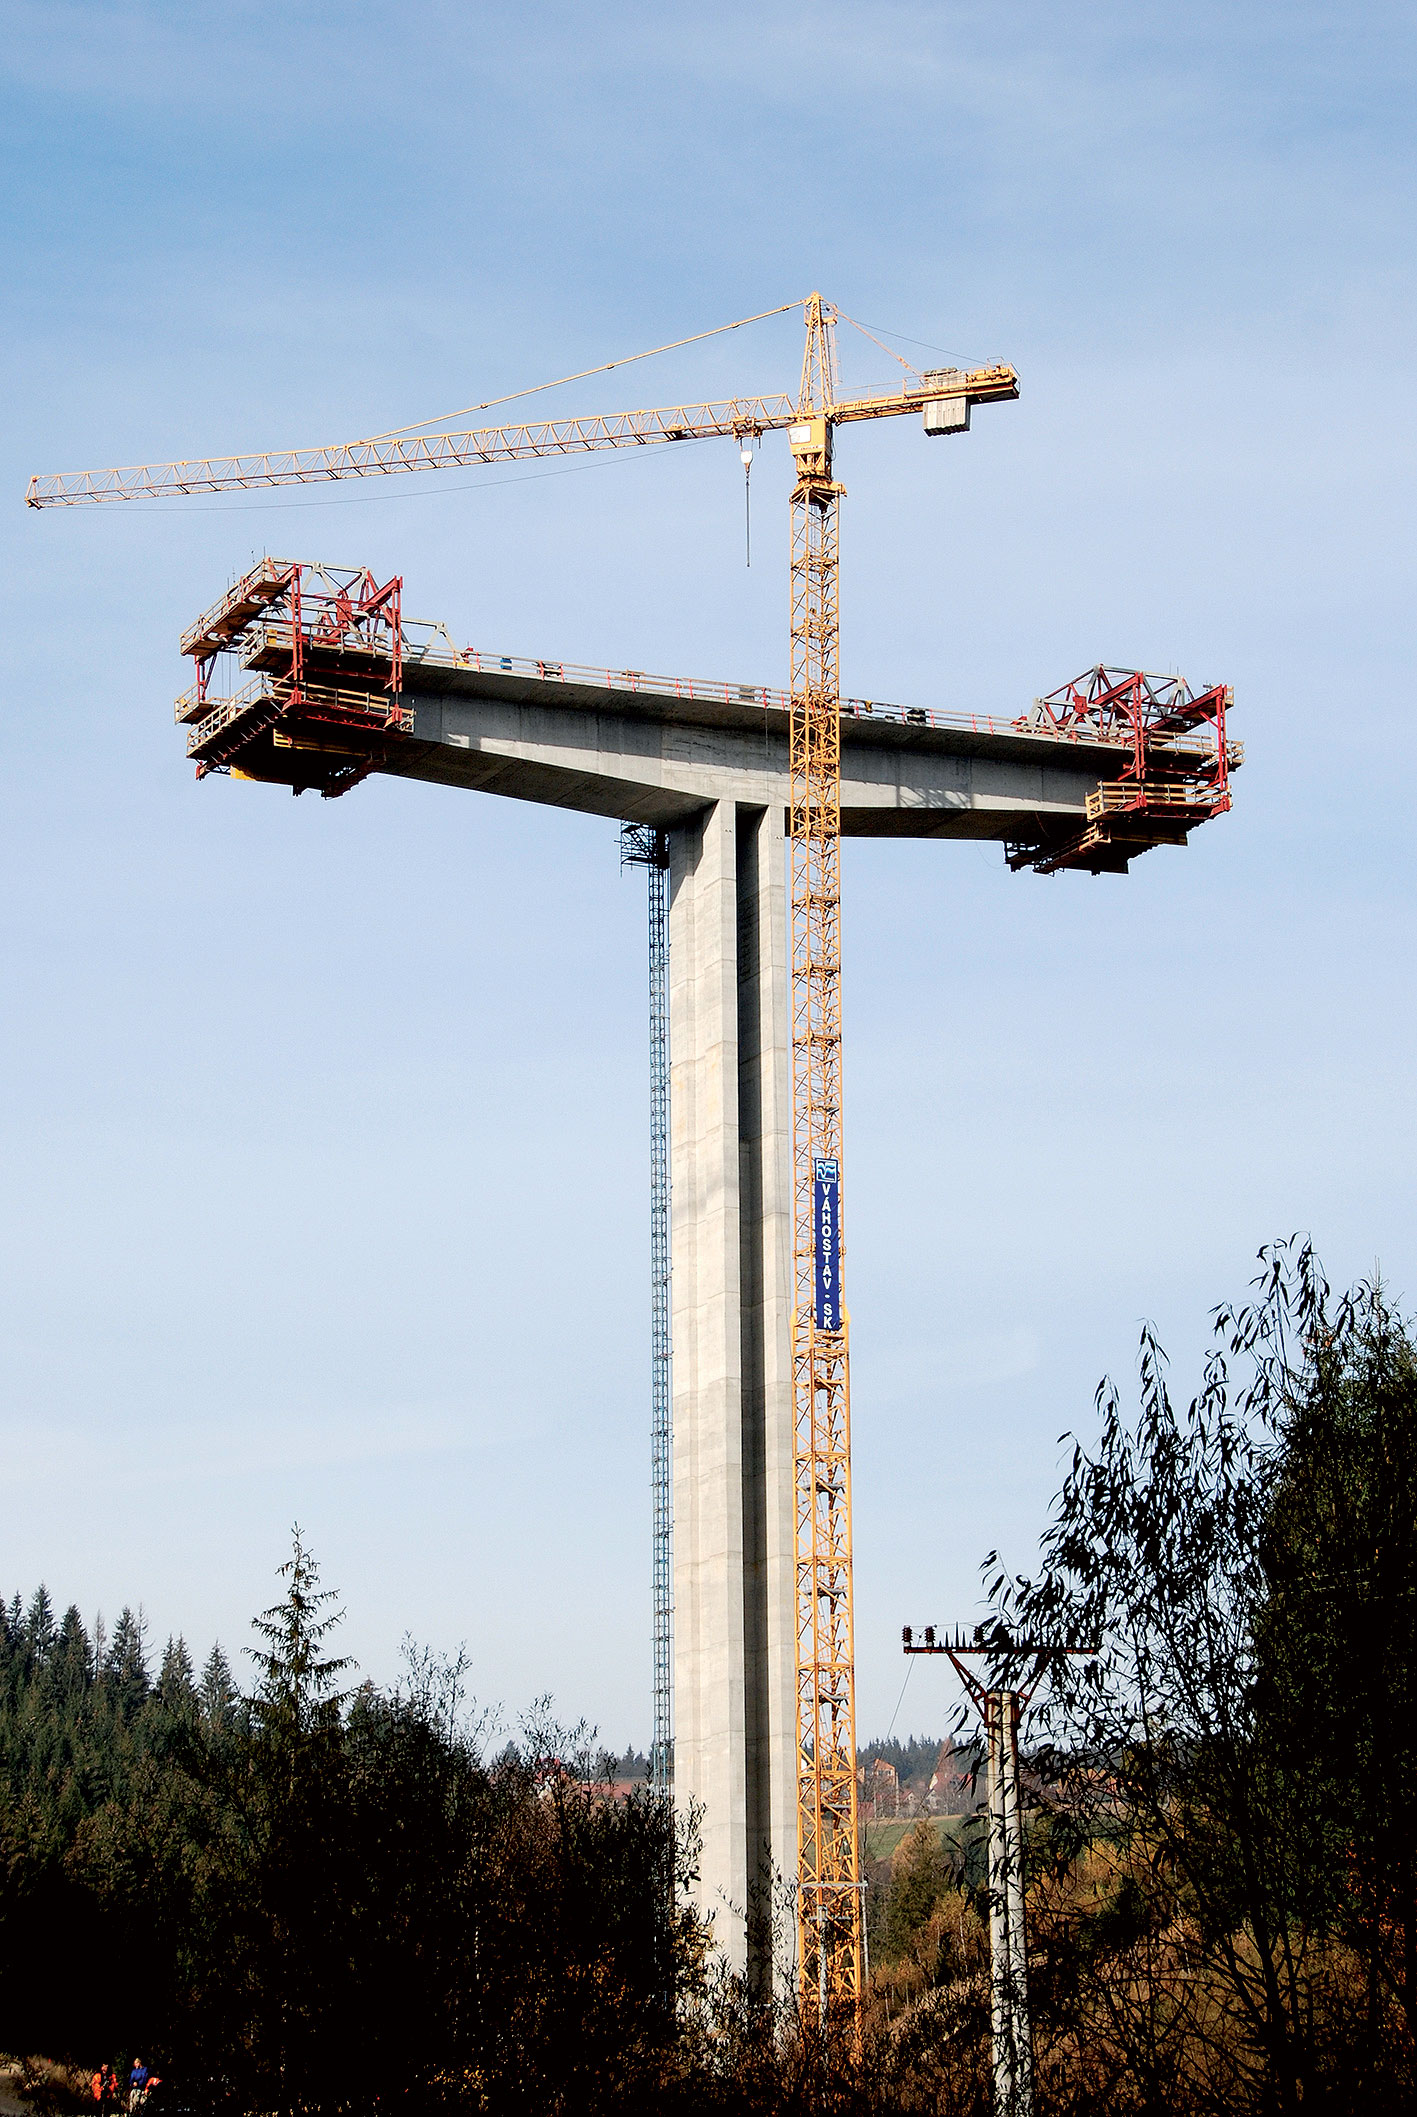 Obr. 1 Pilier č. 5 na SO 244, ktorý je najvyšším pilierom postaveným na Slovensku.